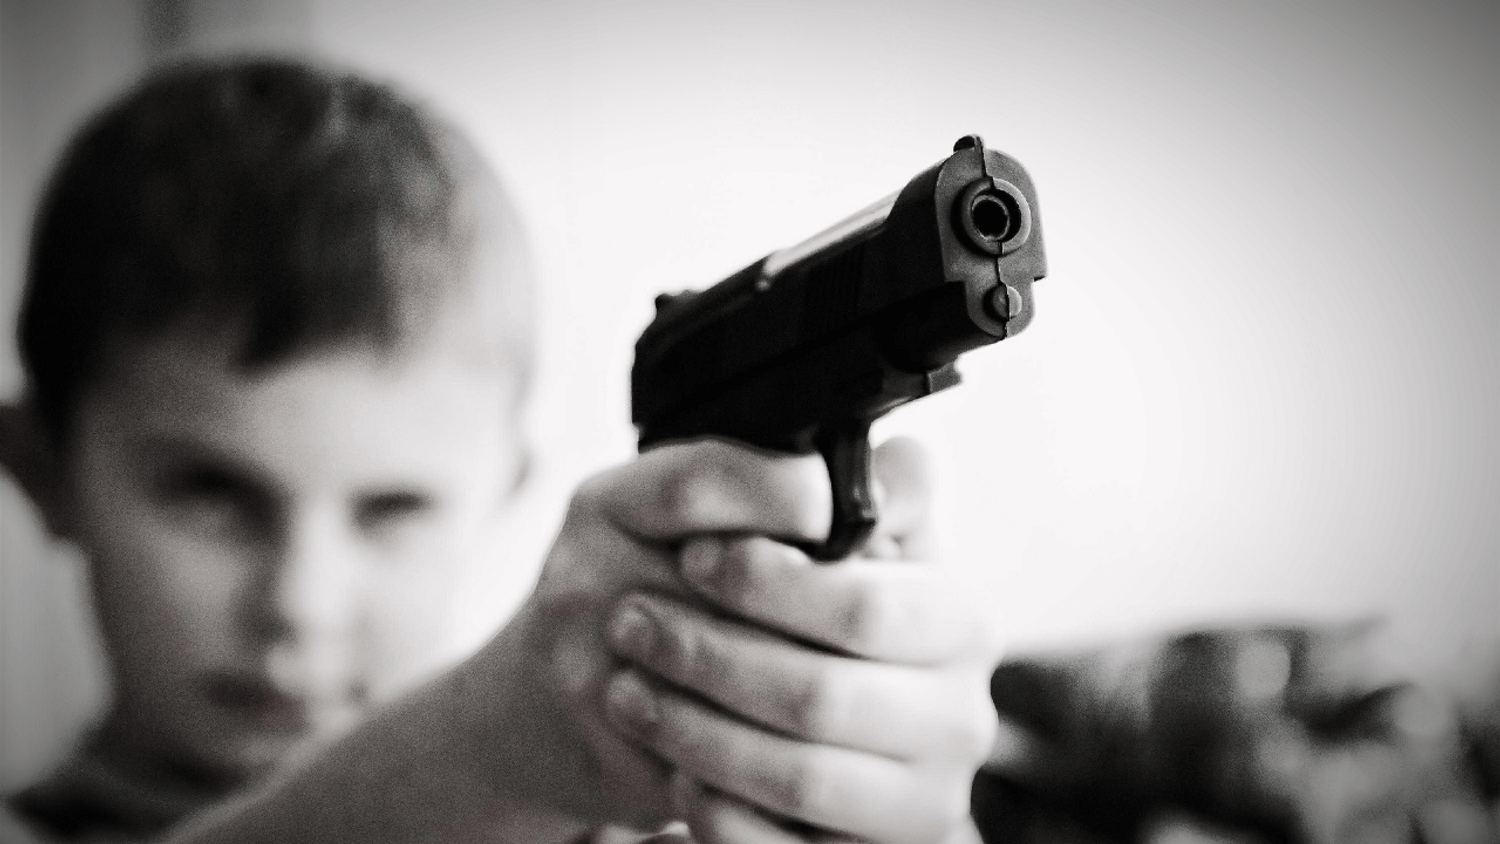 États-Unis : un enfant de 5 ans abattu pendant le tournage d'une vidéo par des ados